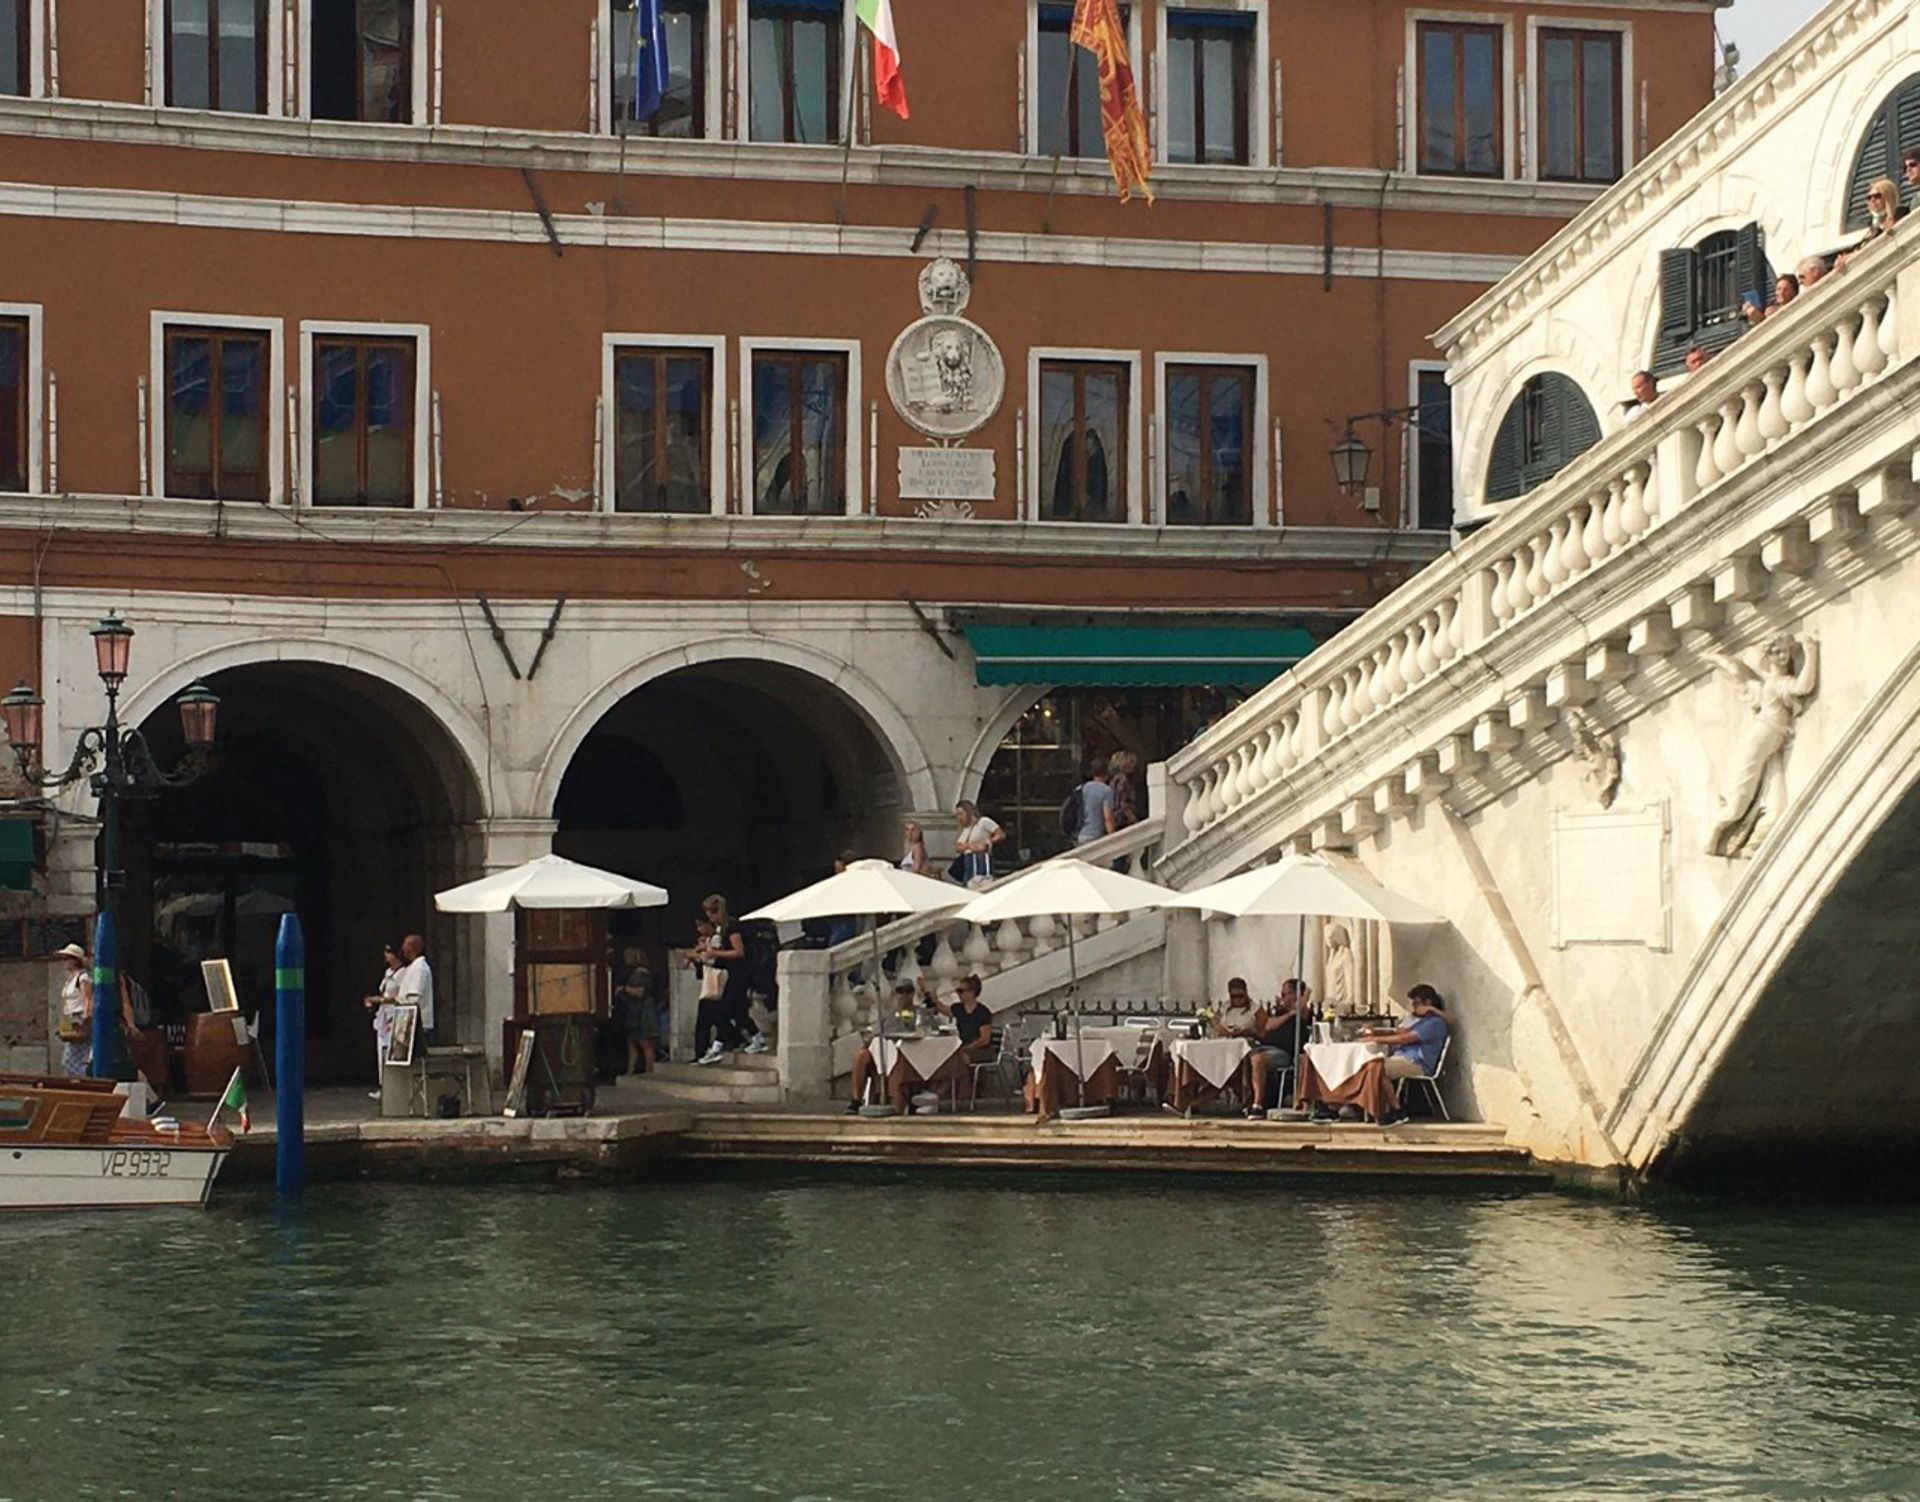 שתי תמונות של הריאלטו בוונציה מראות כיצד מפלס המים כבר עלה: בתמונה העכשווית הזו, נראית רק מדרגה אחת נקייה

צילום: פרנצ'סקו דה מוסטו


